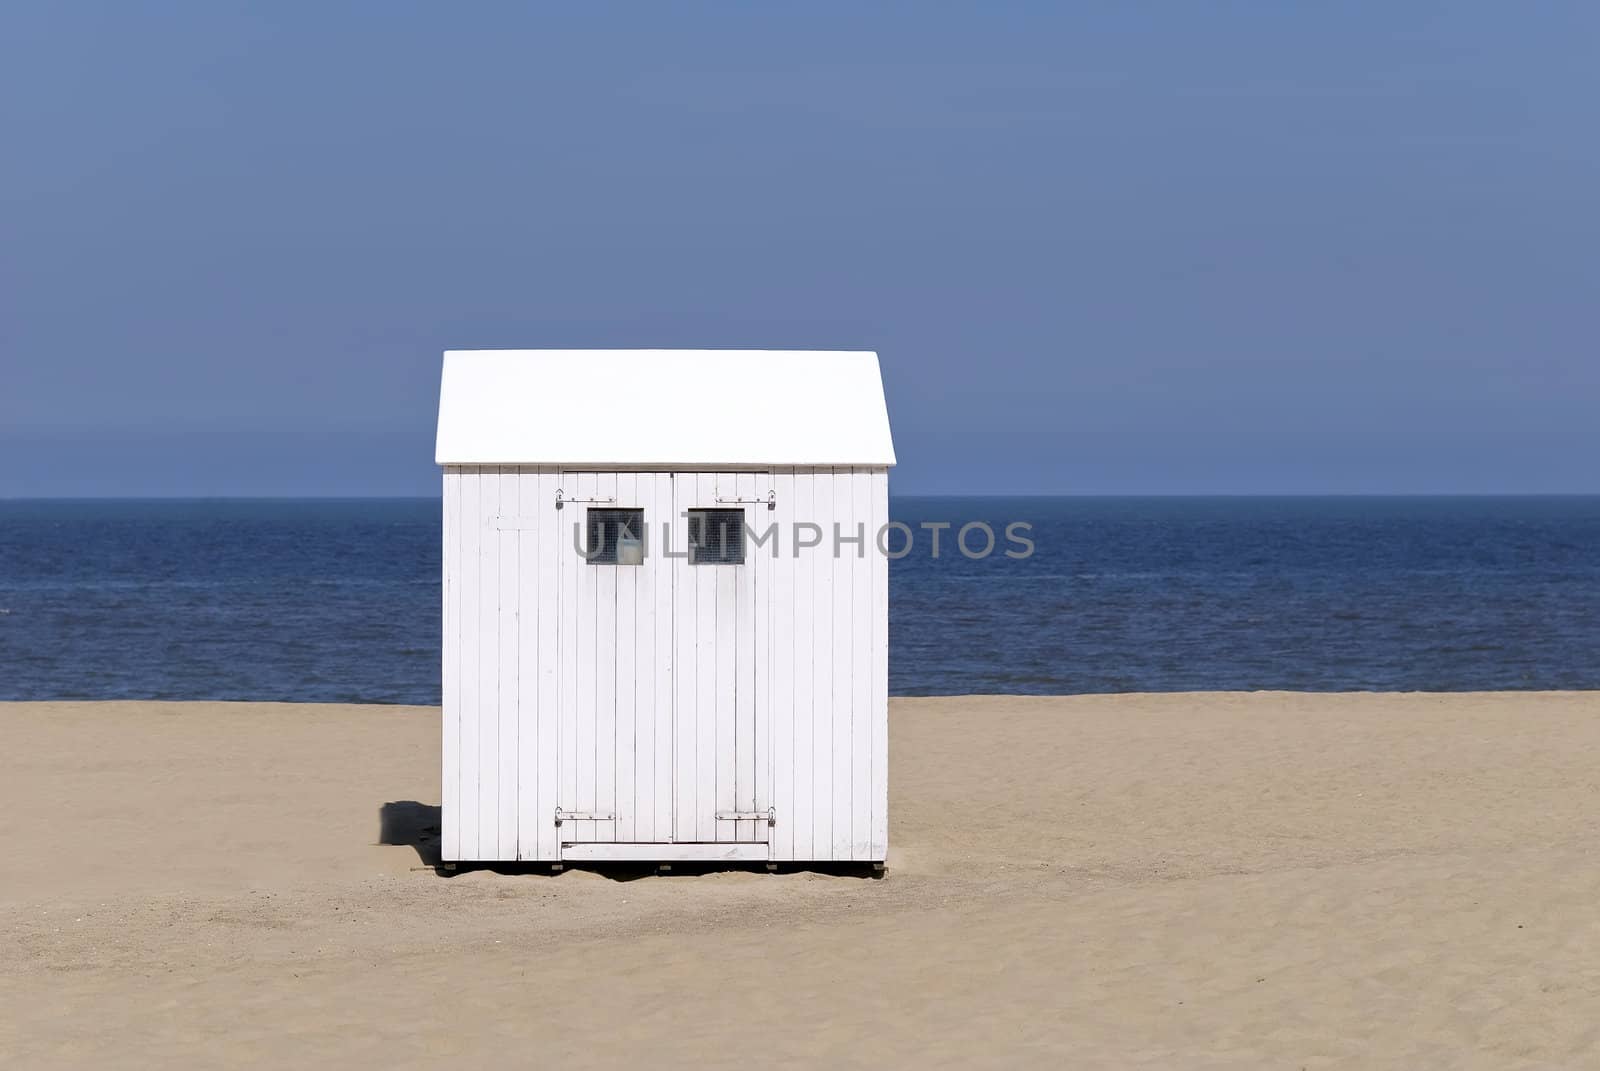 beach hut in the north sea